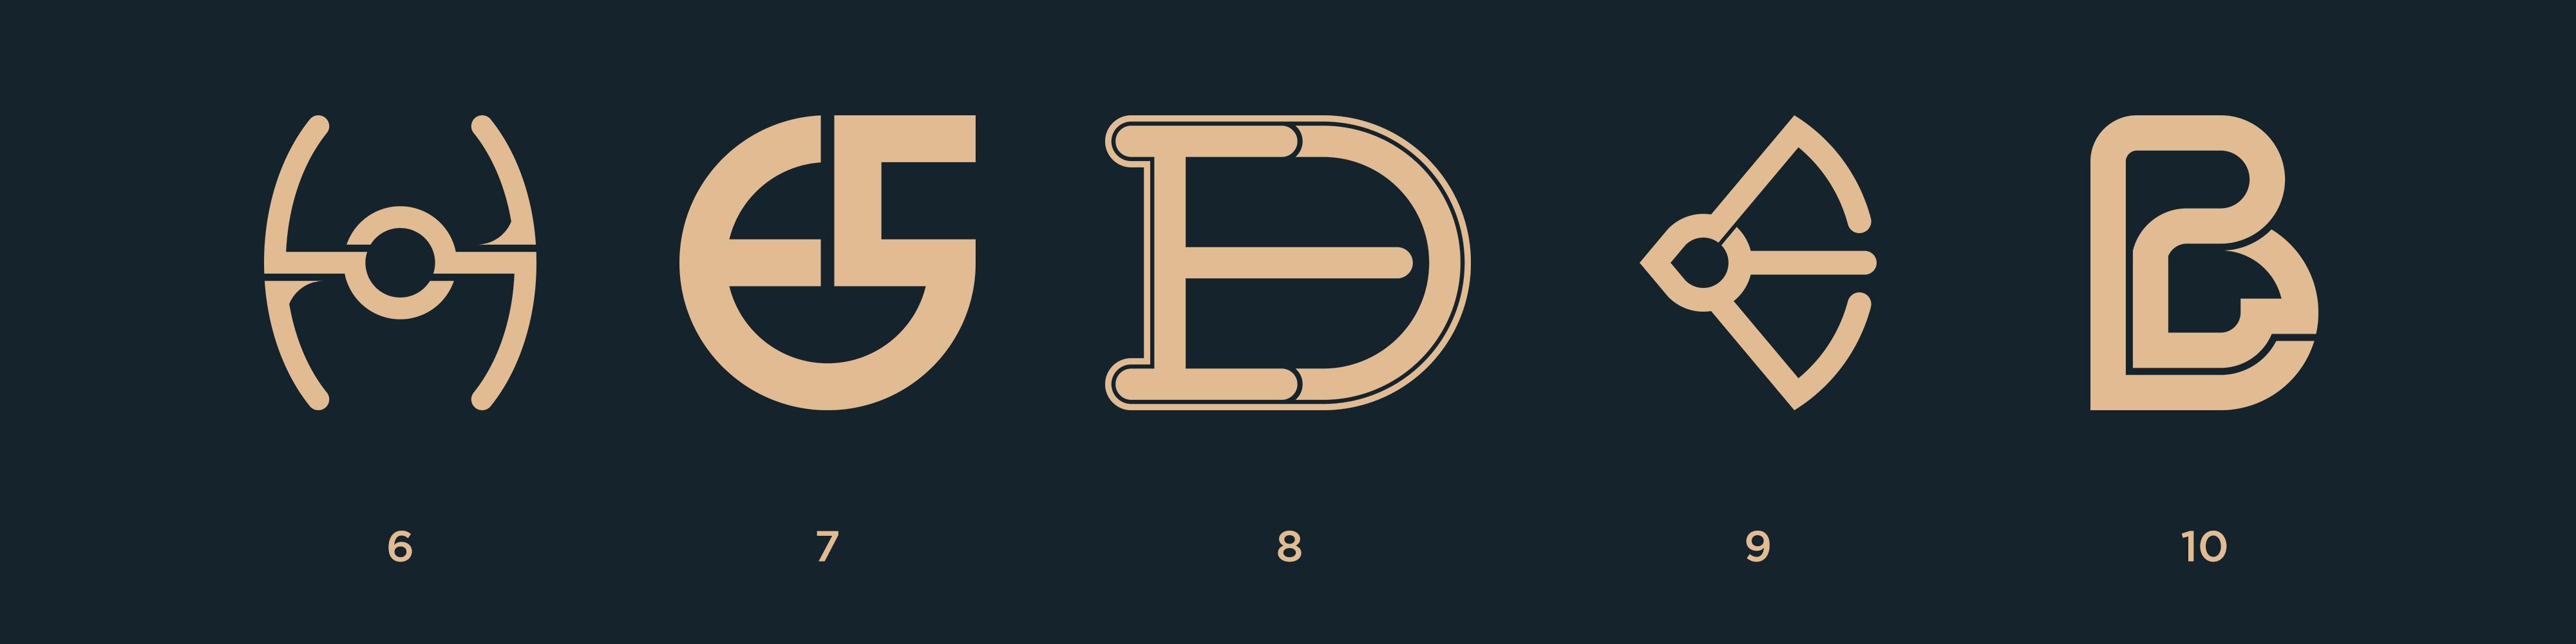 Logotypes C2.png